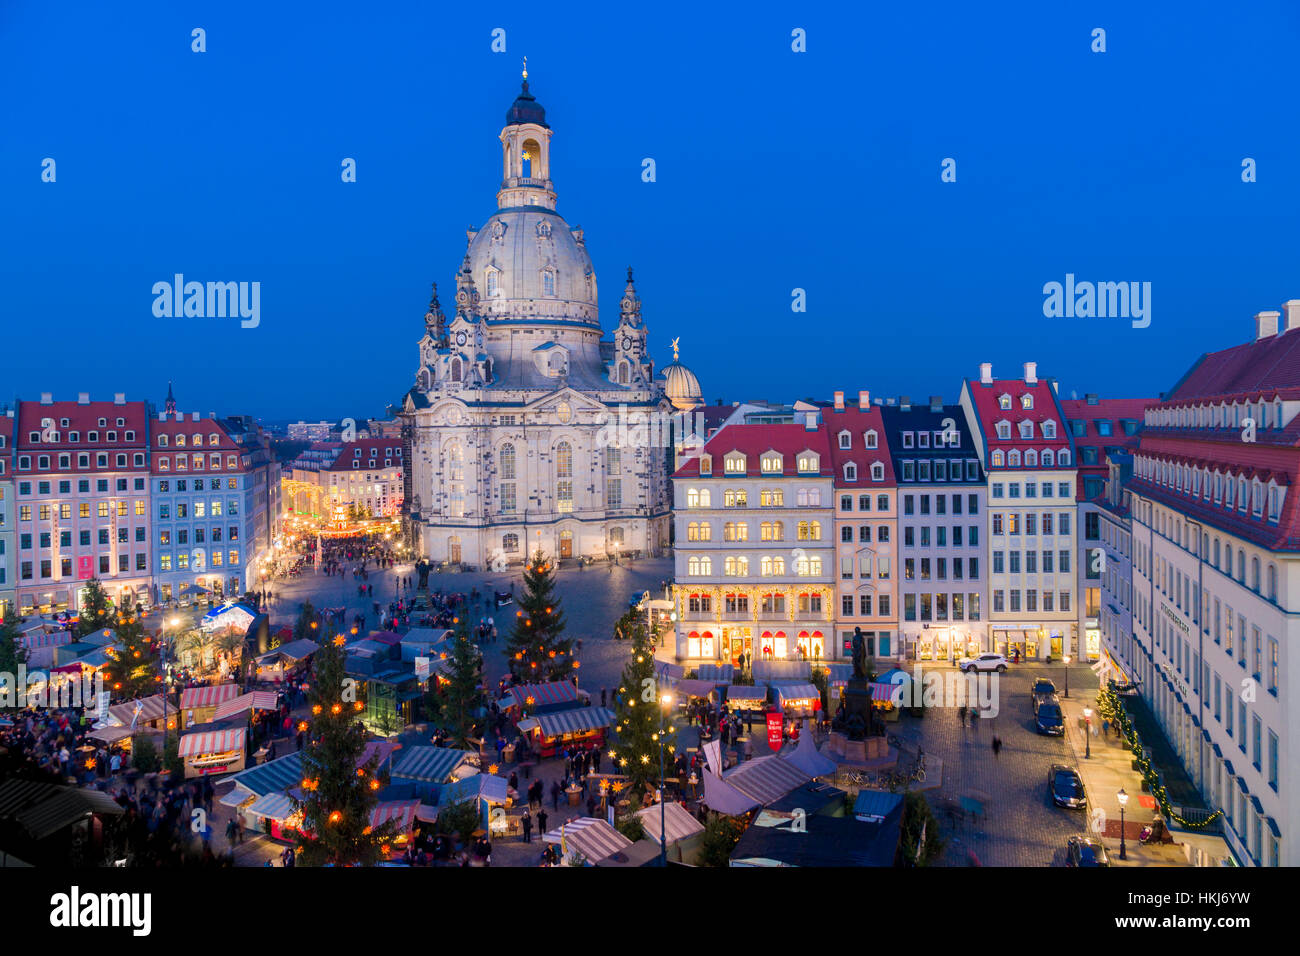 De style Renaissance historique du marché de Noël à Neumarkt en face de l'église Notre Dame, Dresde, Saxe, Allemagne Banque D'Images